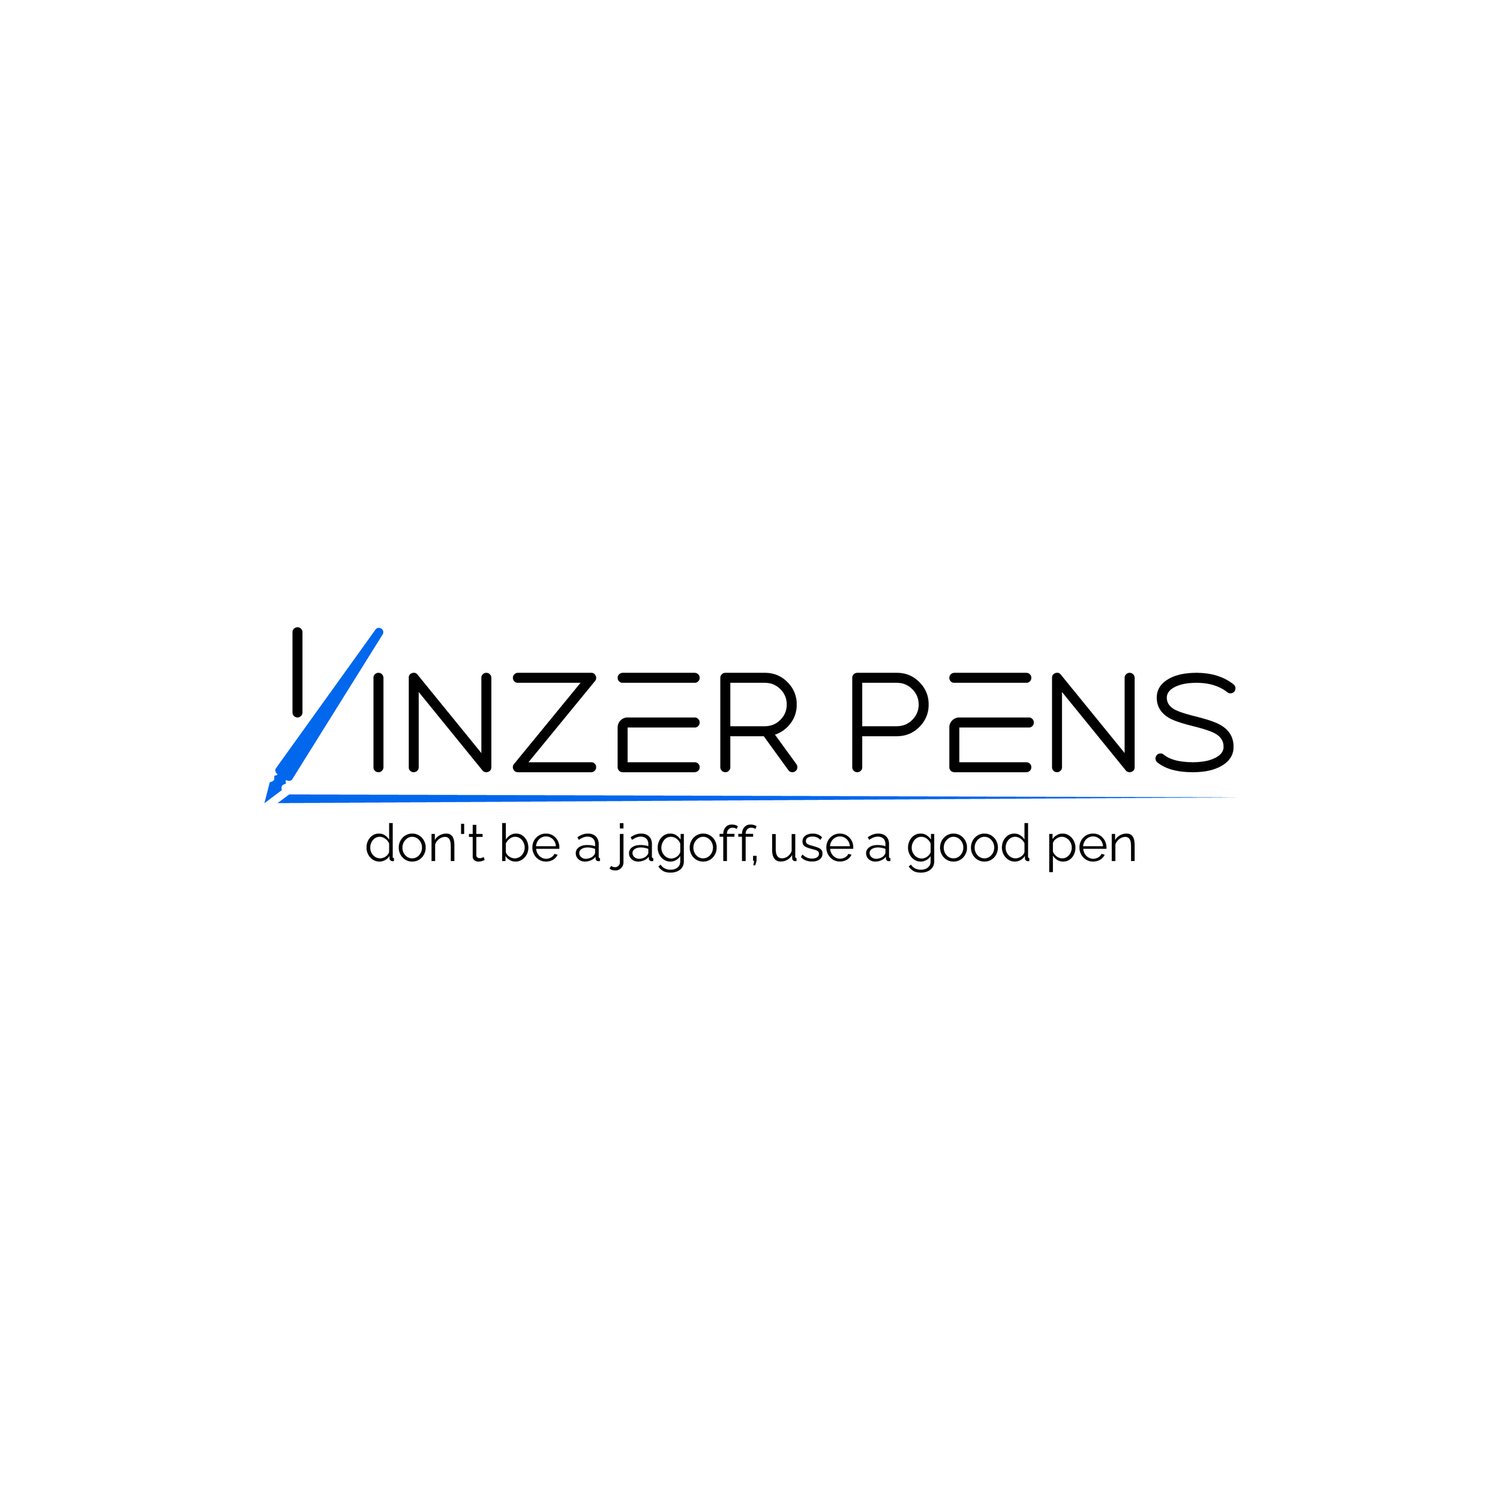 Yinzer Pens